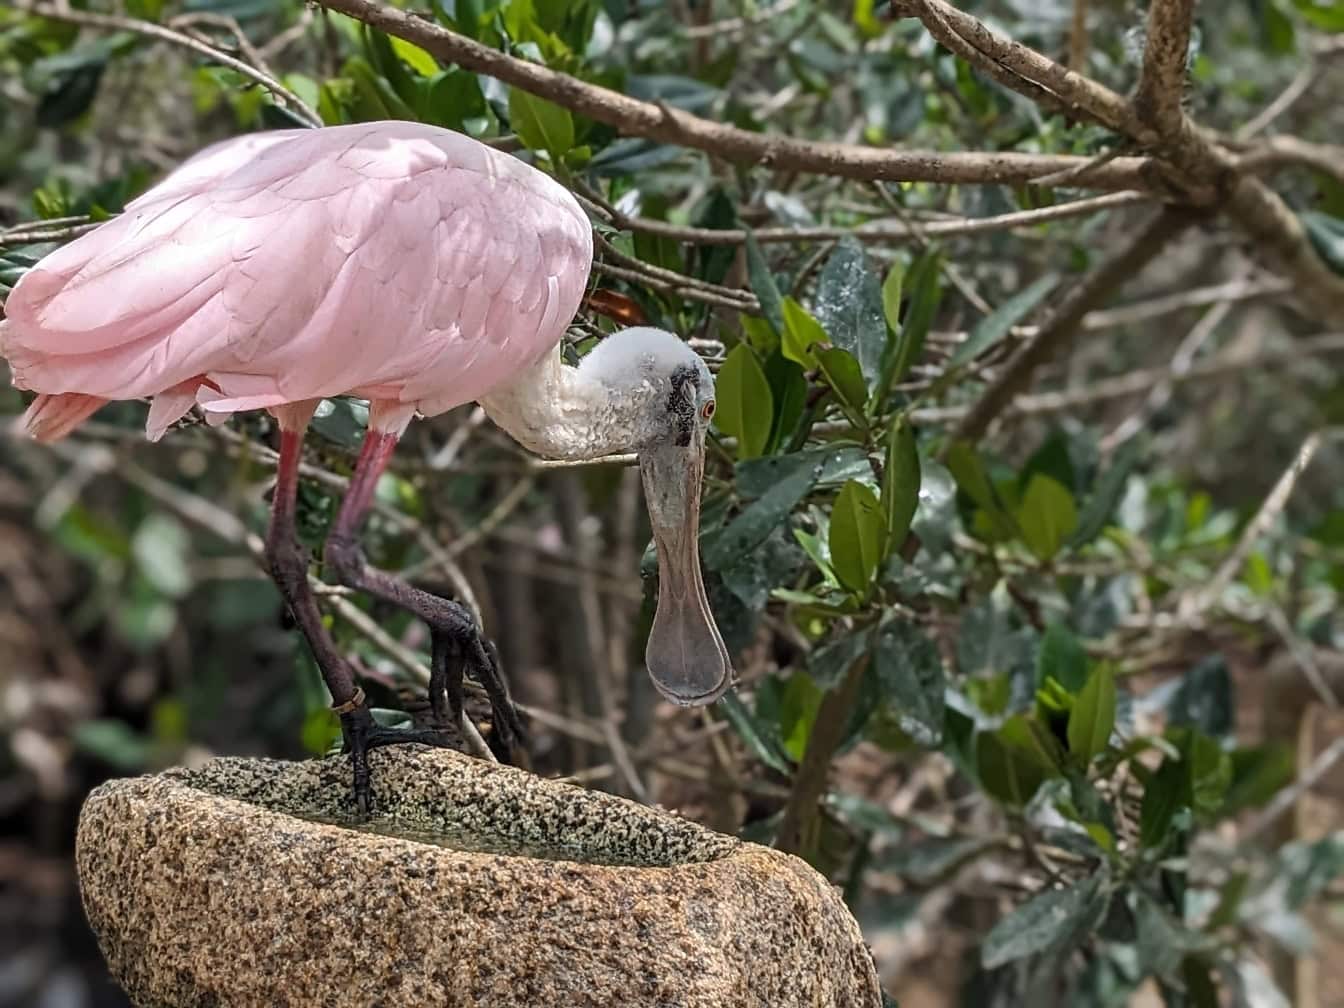 バラ色のヘラサギの鳥 (Platalea ajaja) 、アメリカ大陸の熱帯地域からの熱帯のピンクがかった渉禽類です